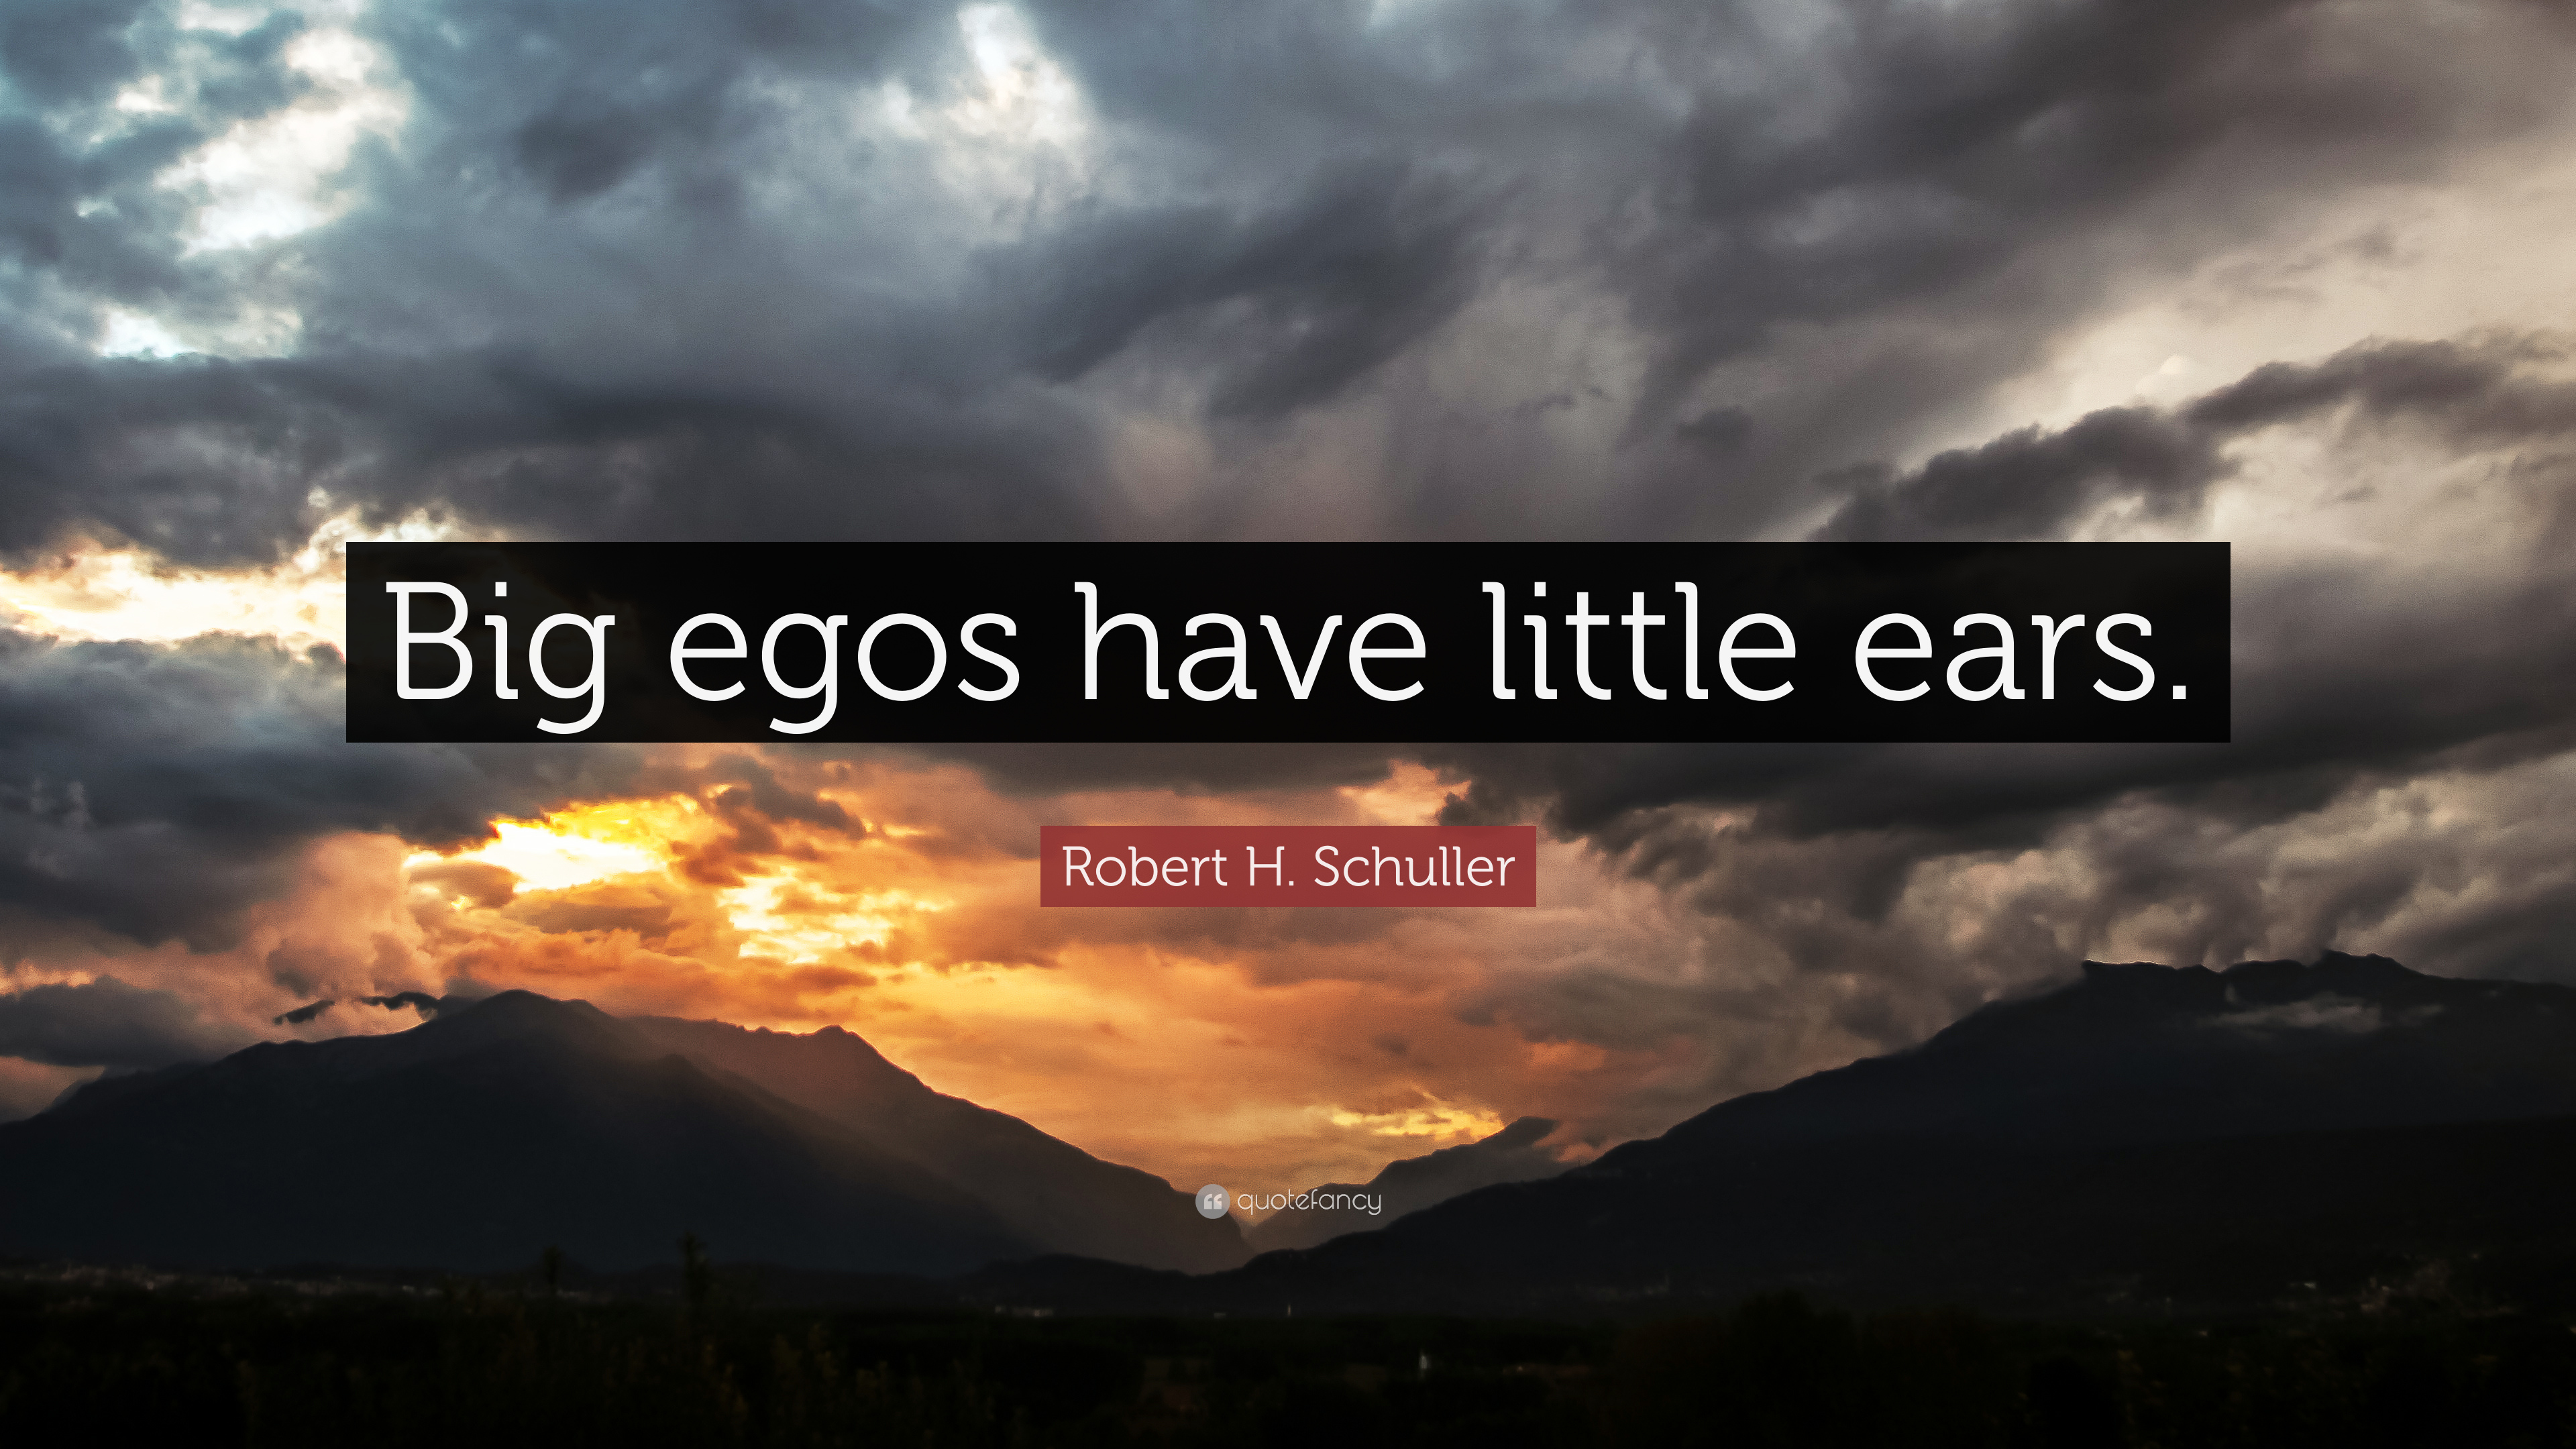 2536666-Robert-H-Schuller-Quote-Big-egos-have-little-ears